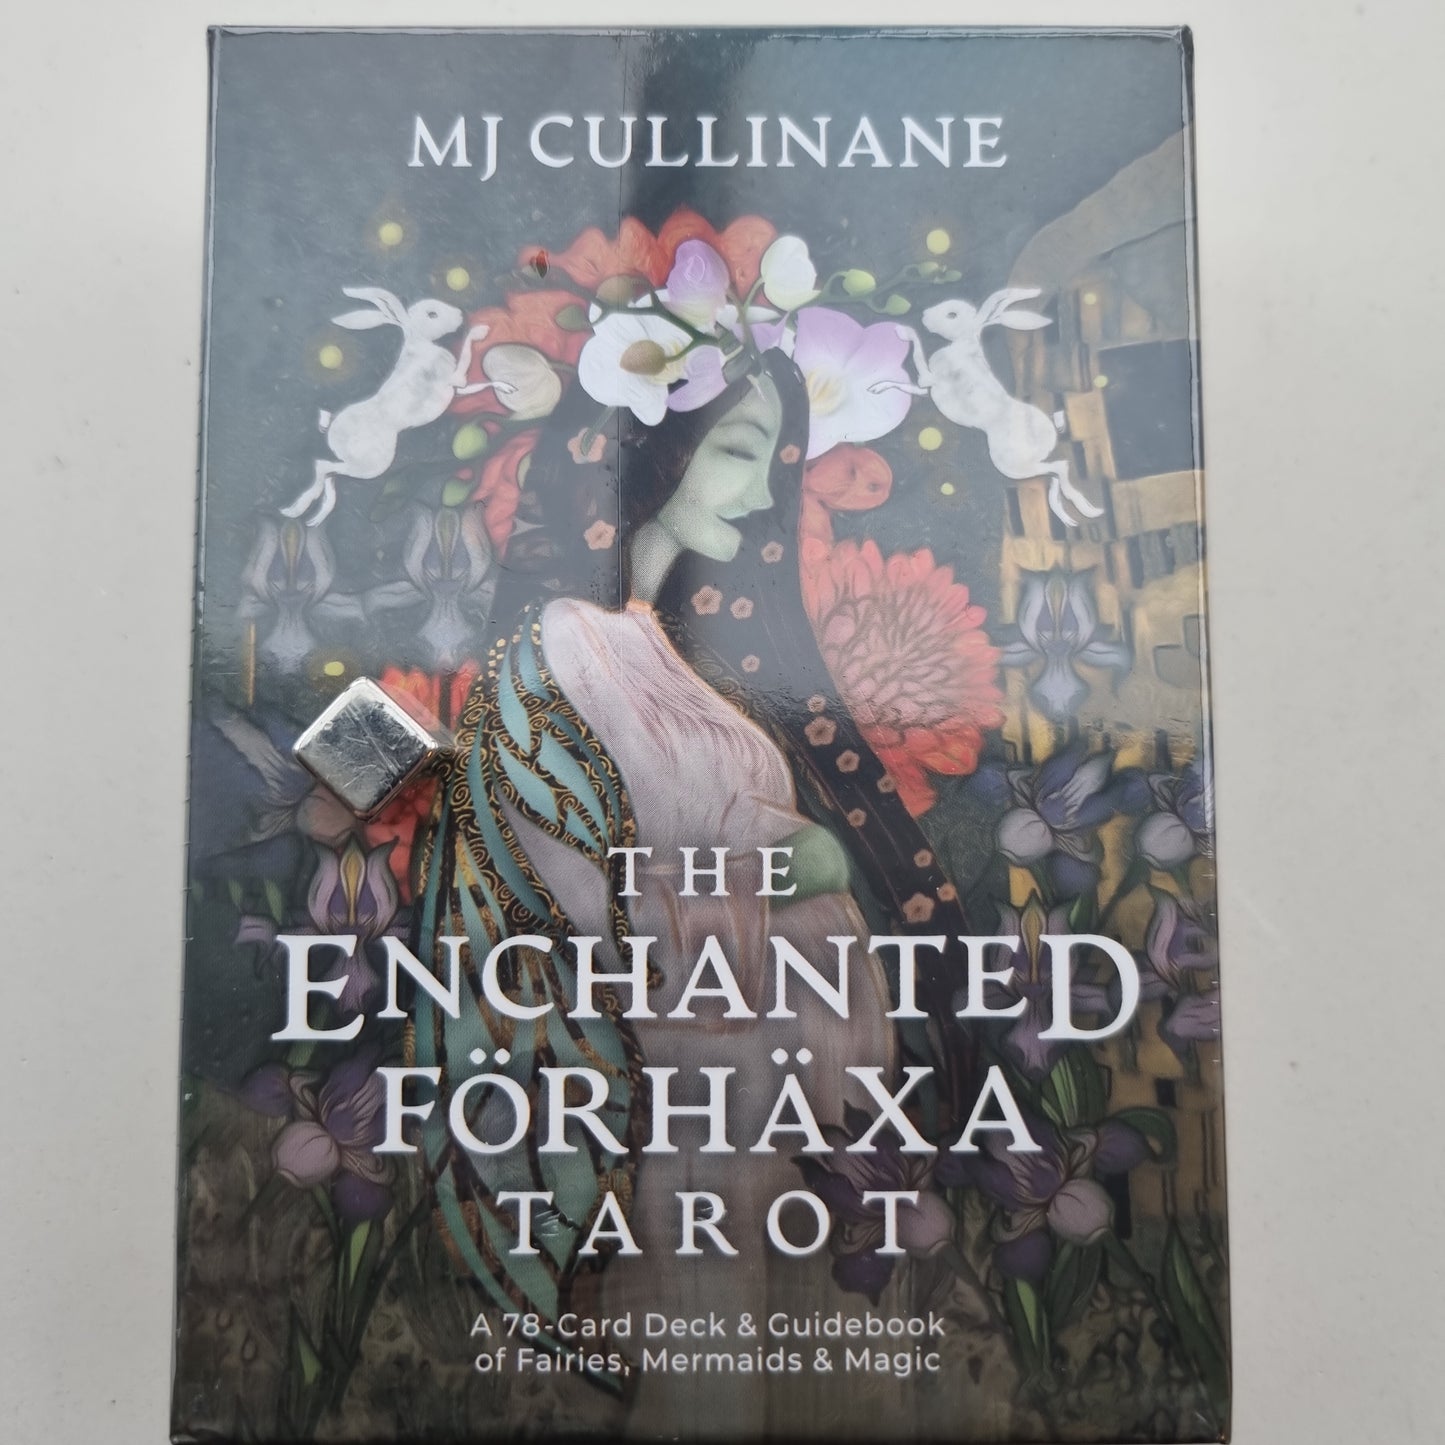 The Enchanted förhäxa Tarot